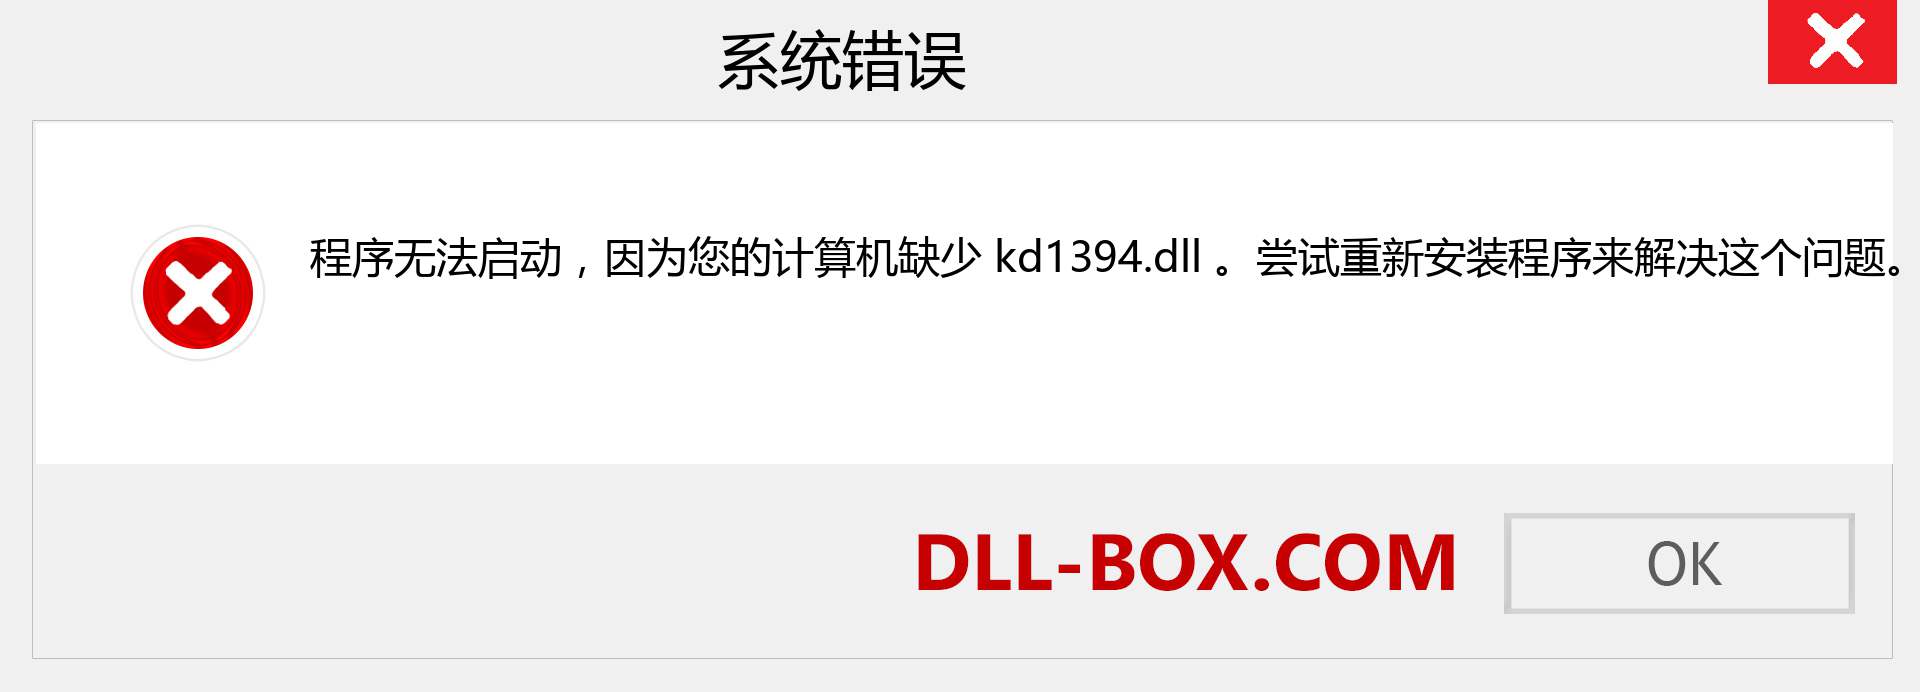 kd1394.dll 文件丢失？。 适用于 Windows 7、8、10 的下载 - 修复 Windows、照片、图像上的 kd1394 dll 丢失错误